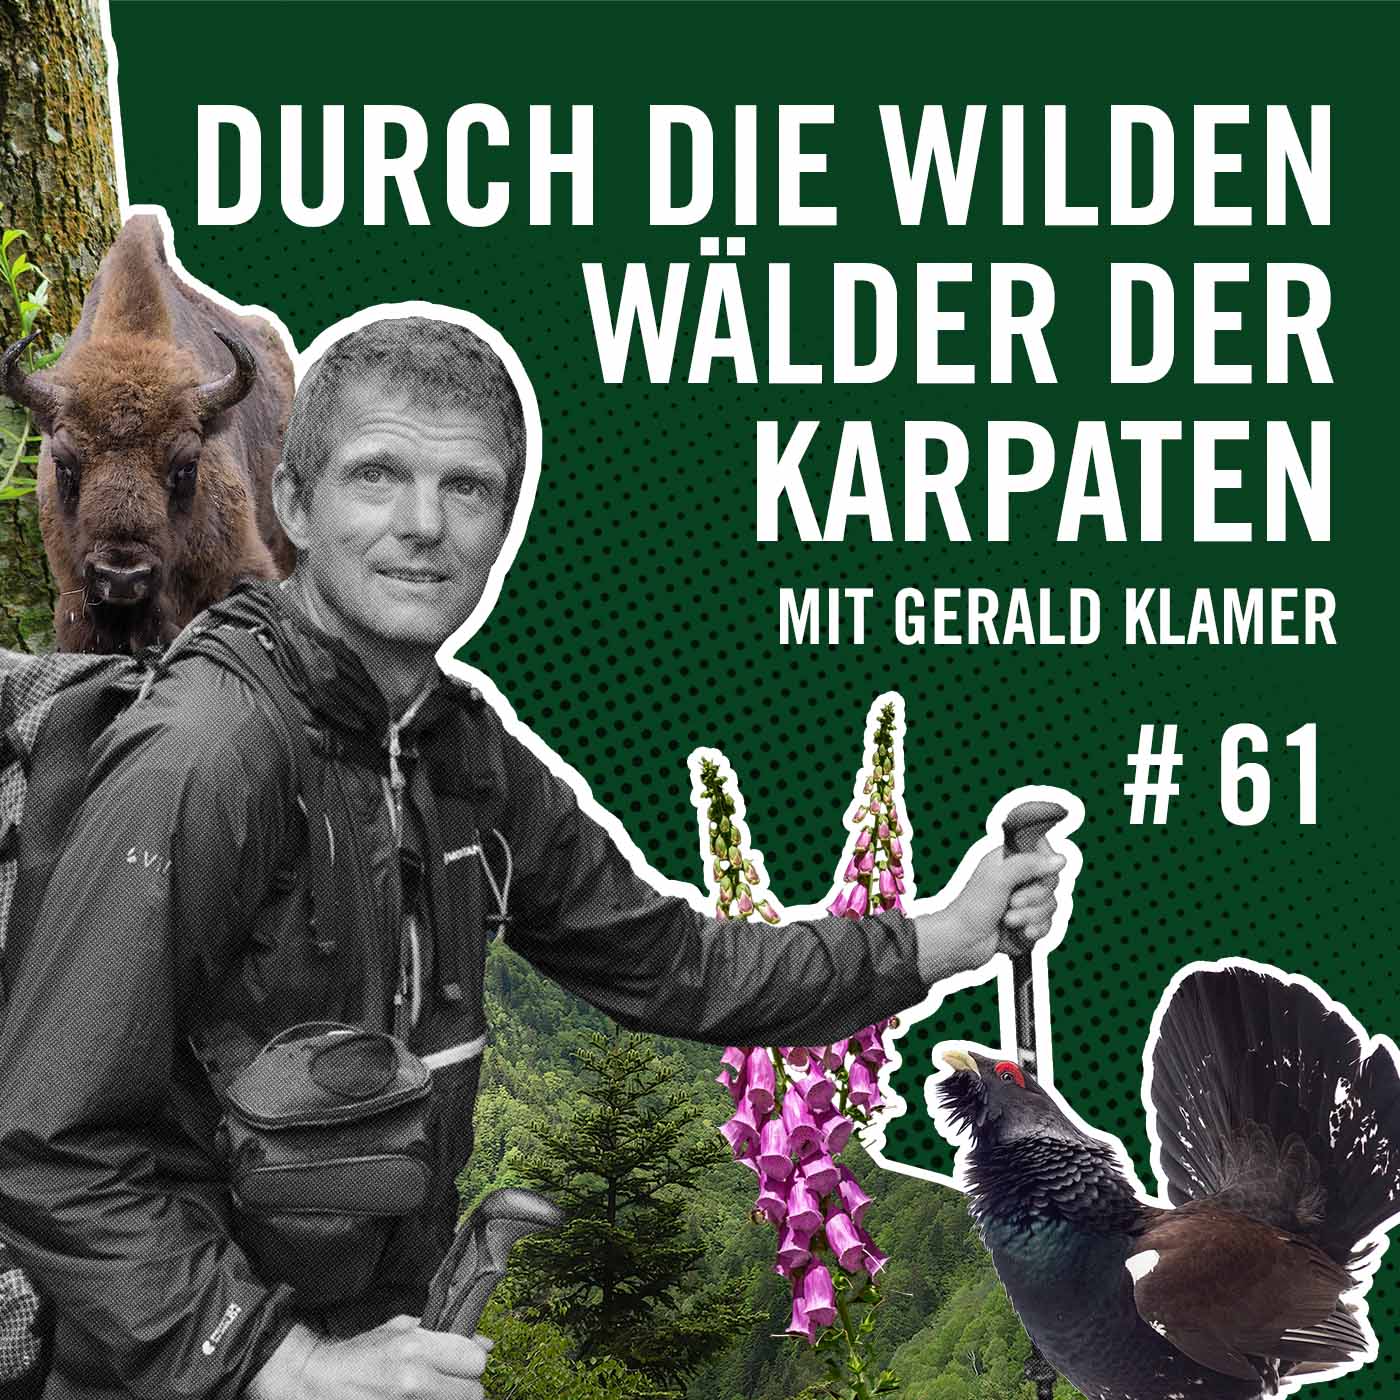 Durch die wilden Wälder der Karpaten mit Gerald Klamer #61